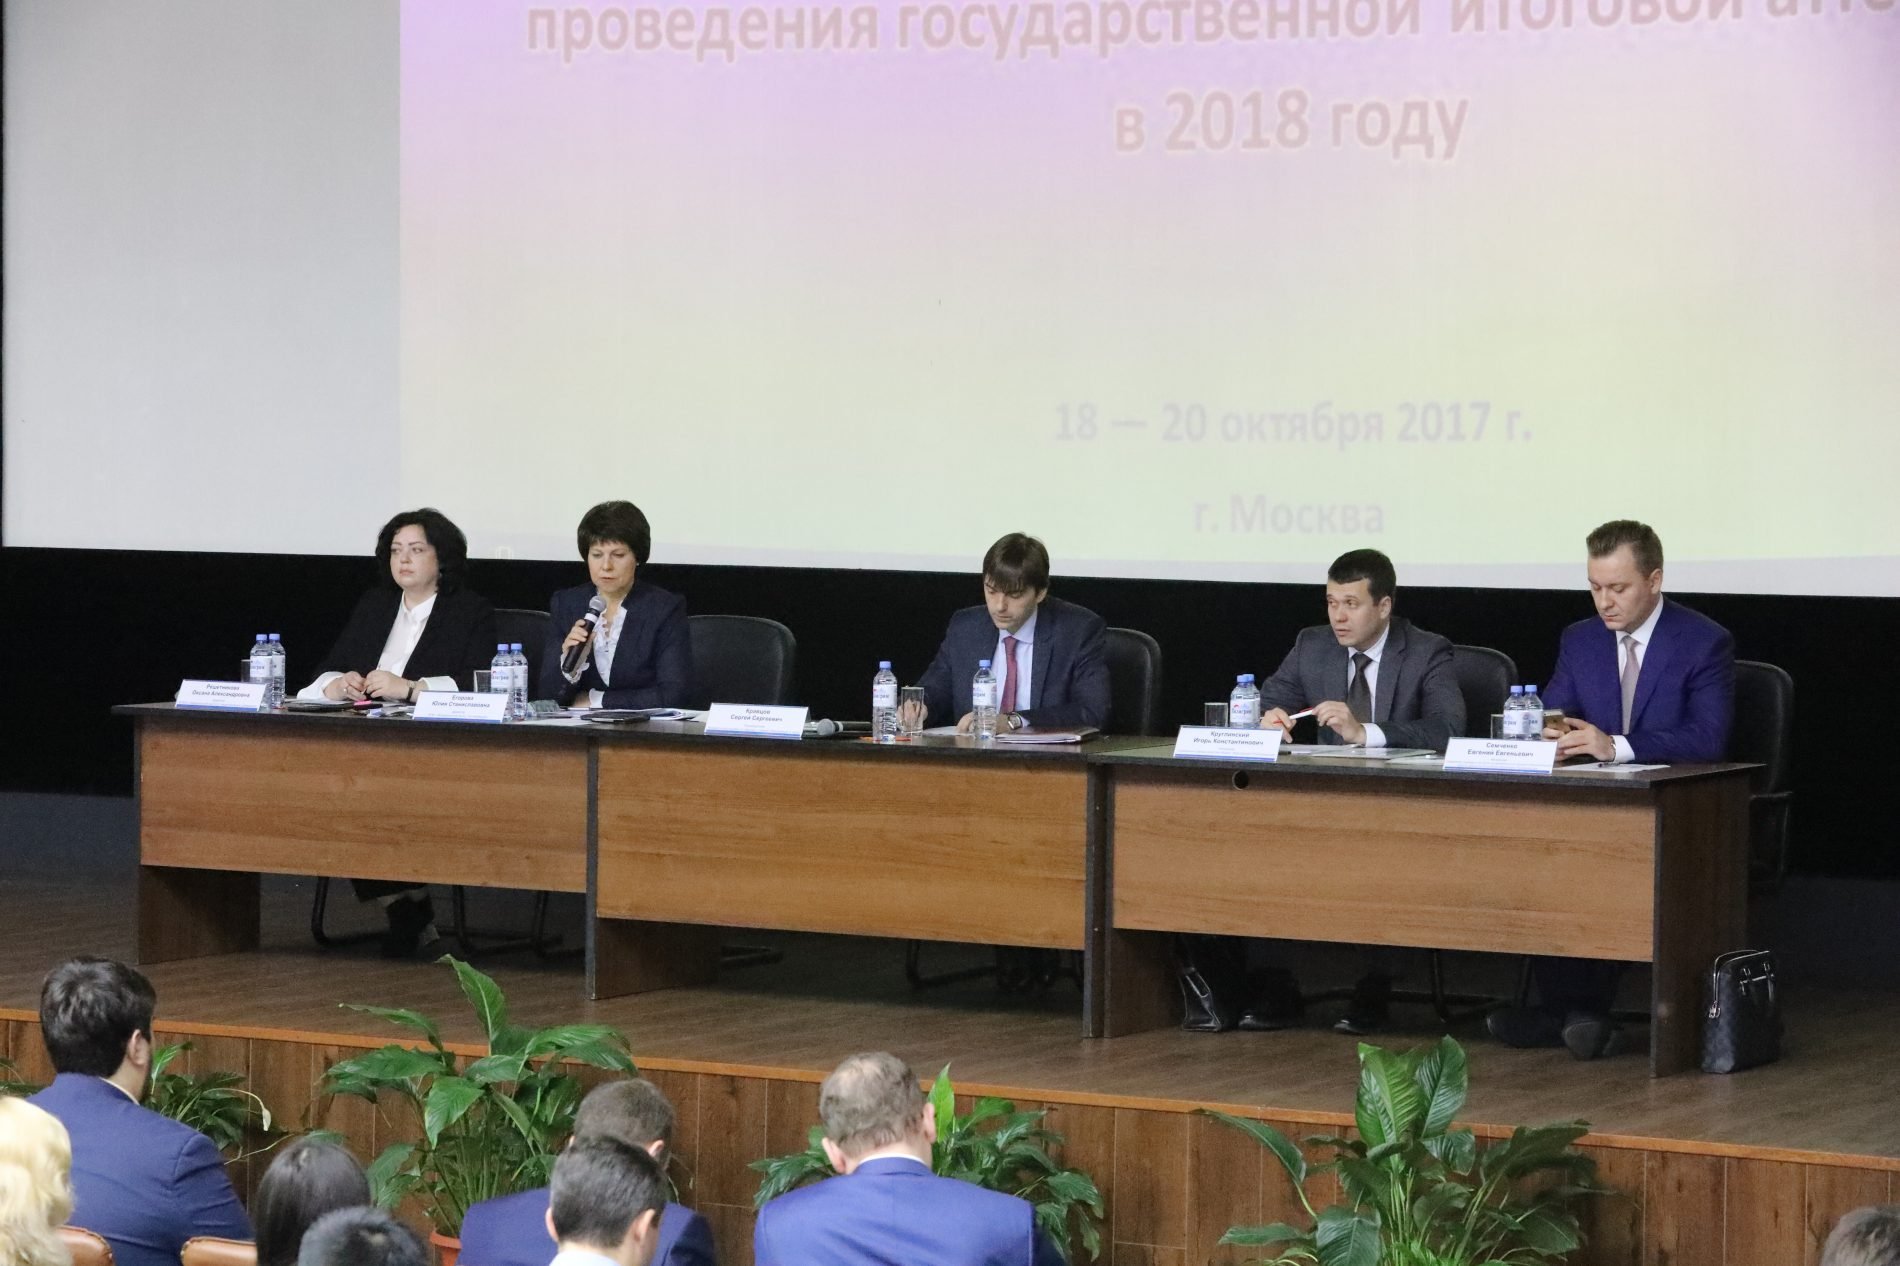 Руководитель Рособрнадзора назвал основные задачи по подготовке к ЕГЭ-2018